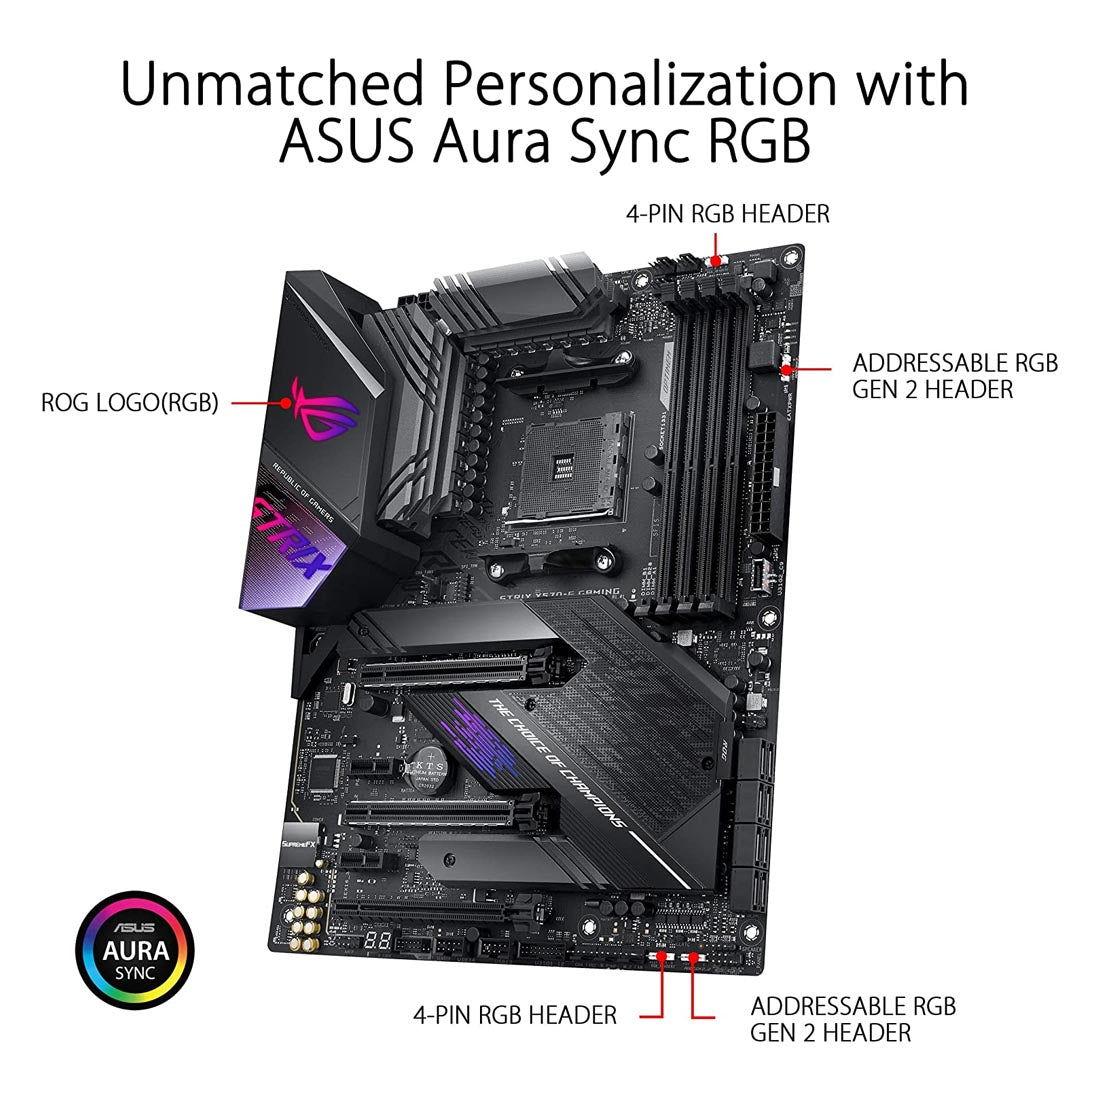 ASUS ROG STRIX X570-E AMD AM4 ATX गेमिंग मदरबोर्ड PCIe 4.0 और डुअल M.2 के साथ